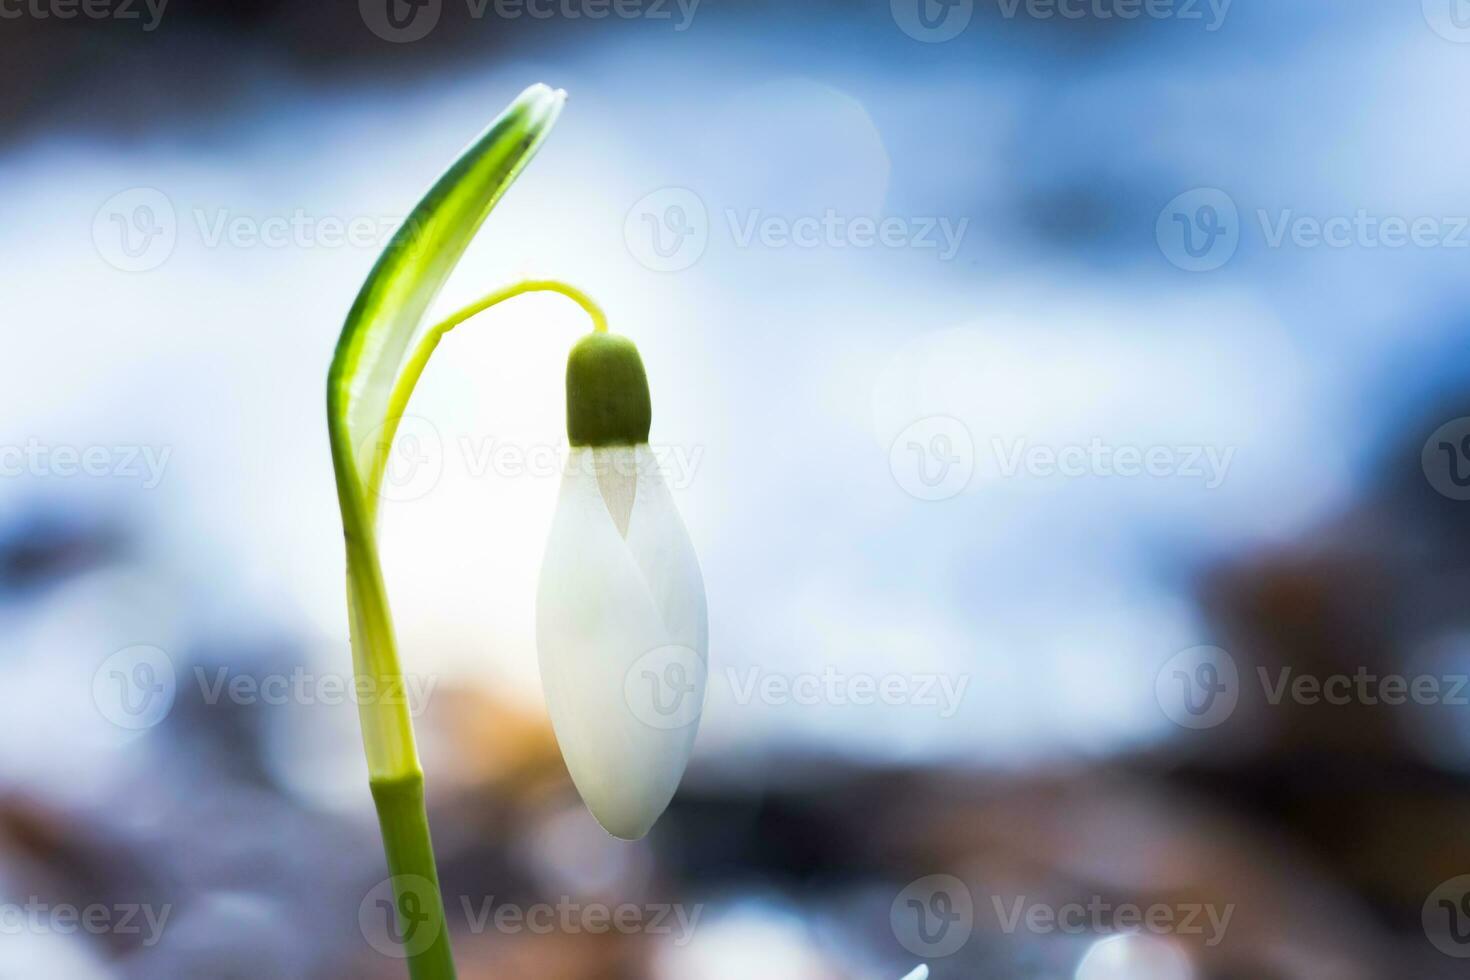 el primero primavera flores blanco campanillas en el bosque iluminar foto